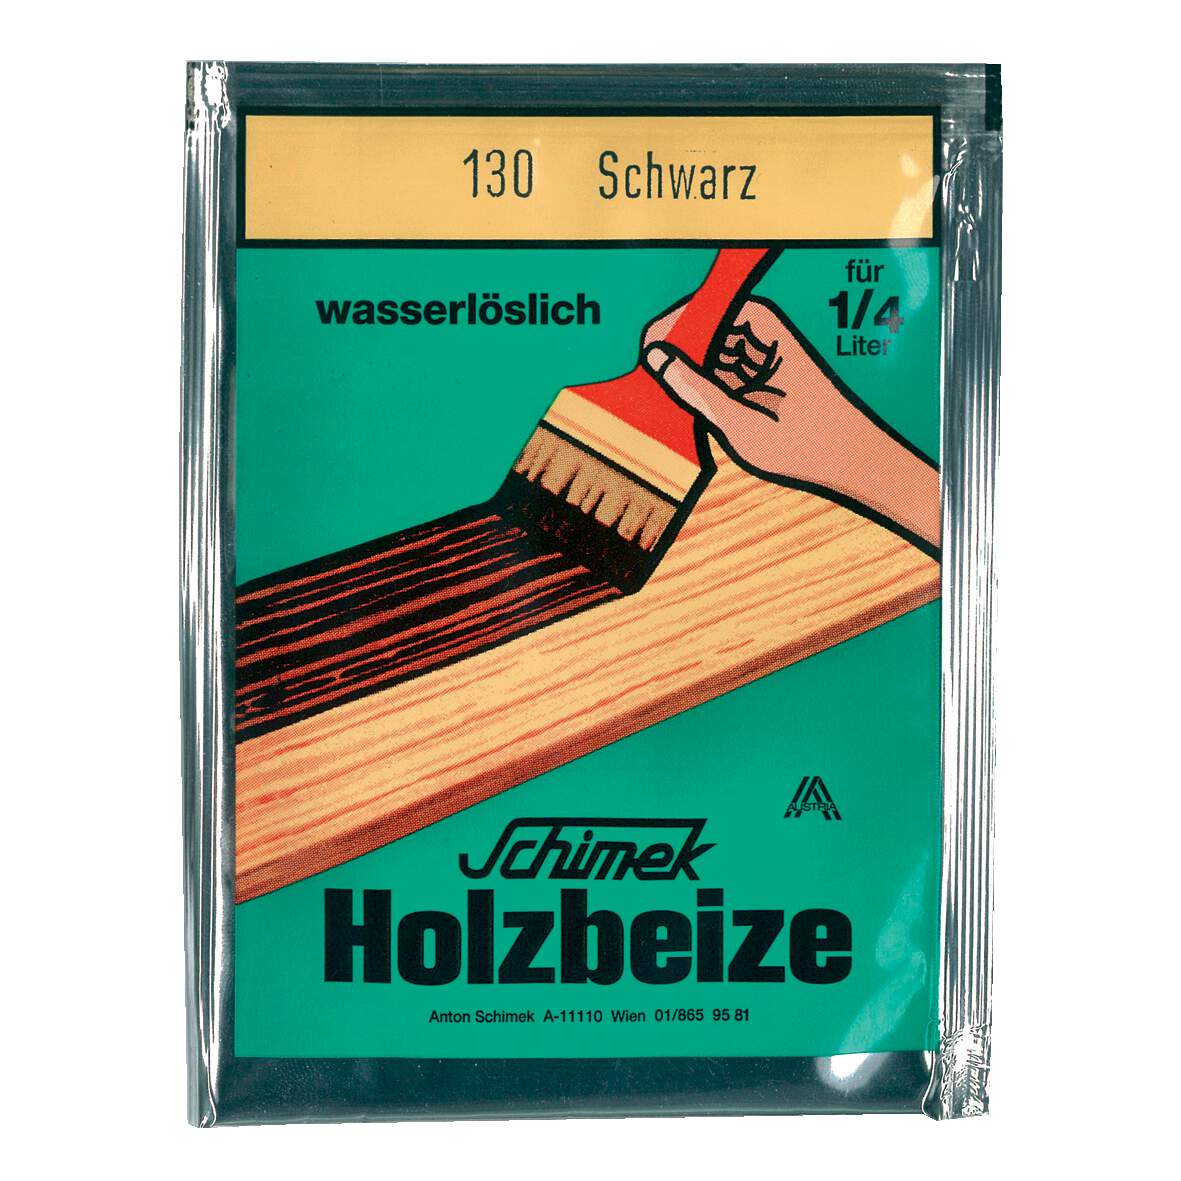 1216638 - Holzbeize wasserlöslich